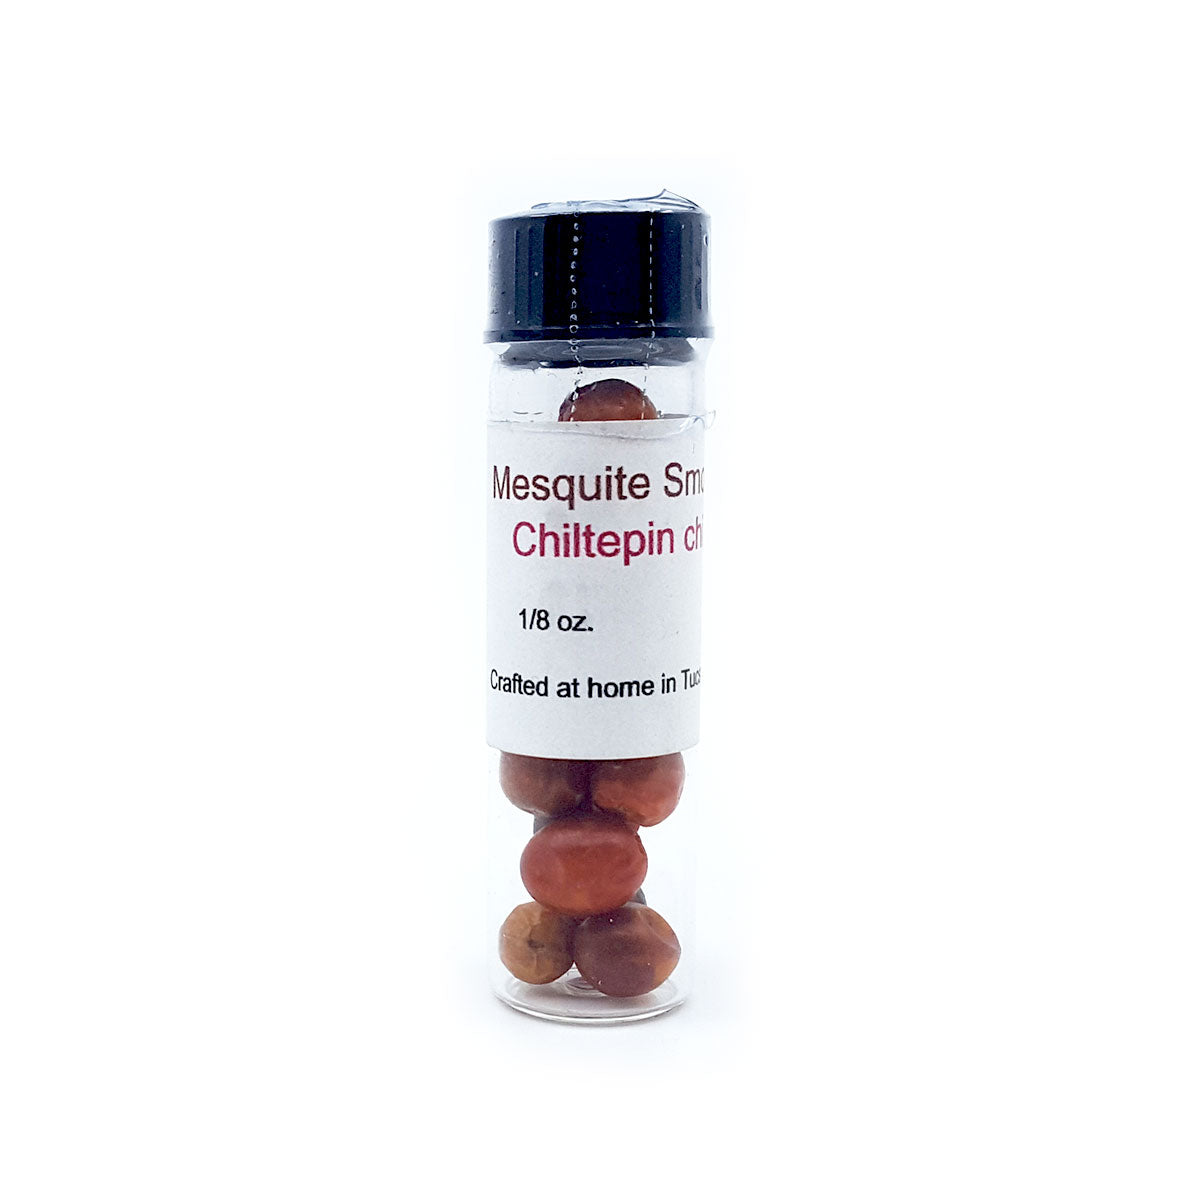 Mesquite Smoked Chiltepin - 1/8 oz. Jar